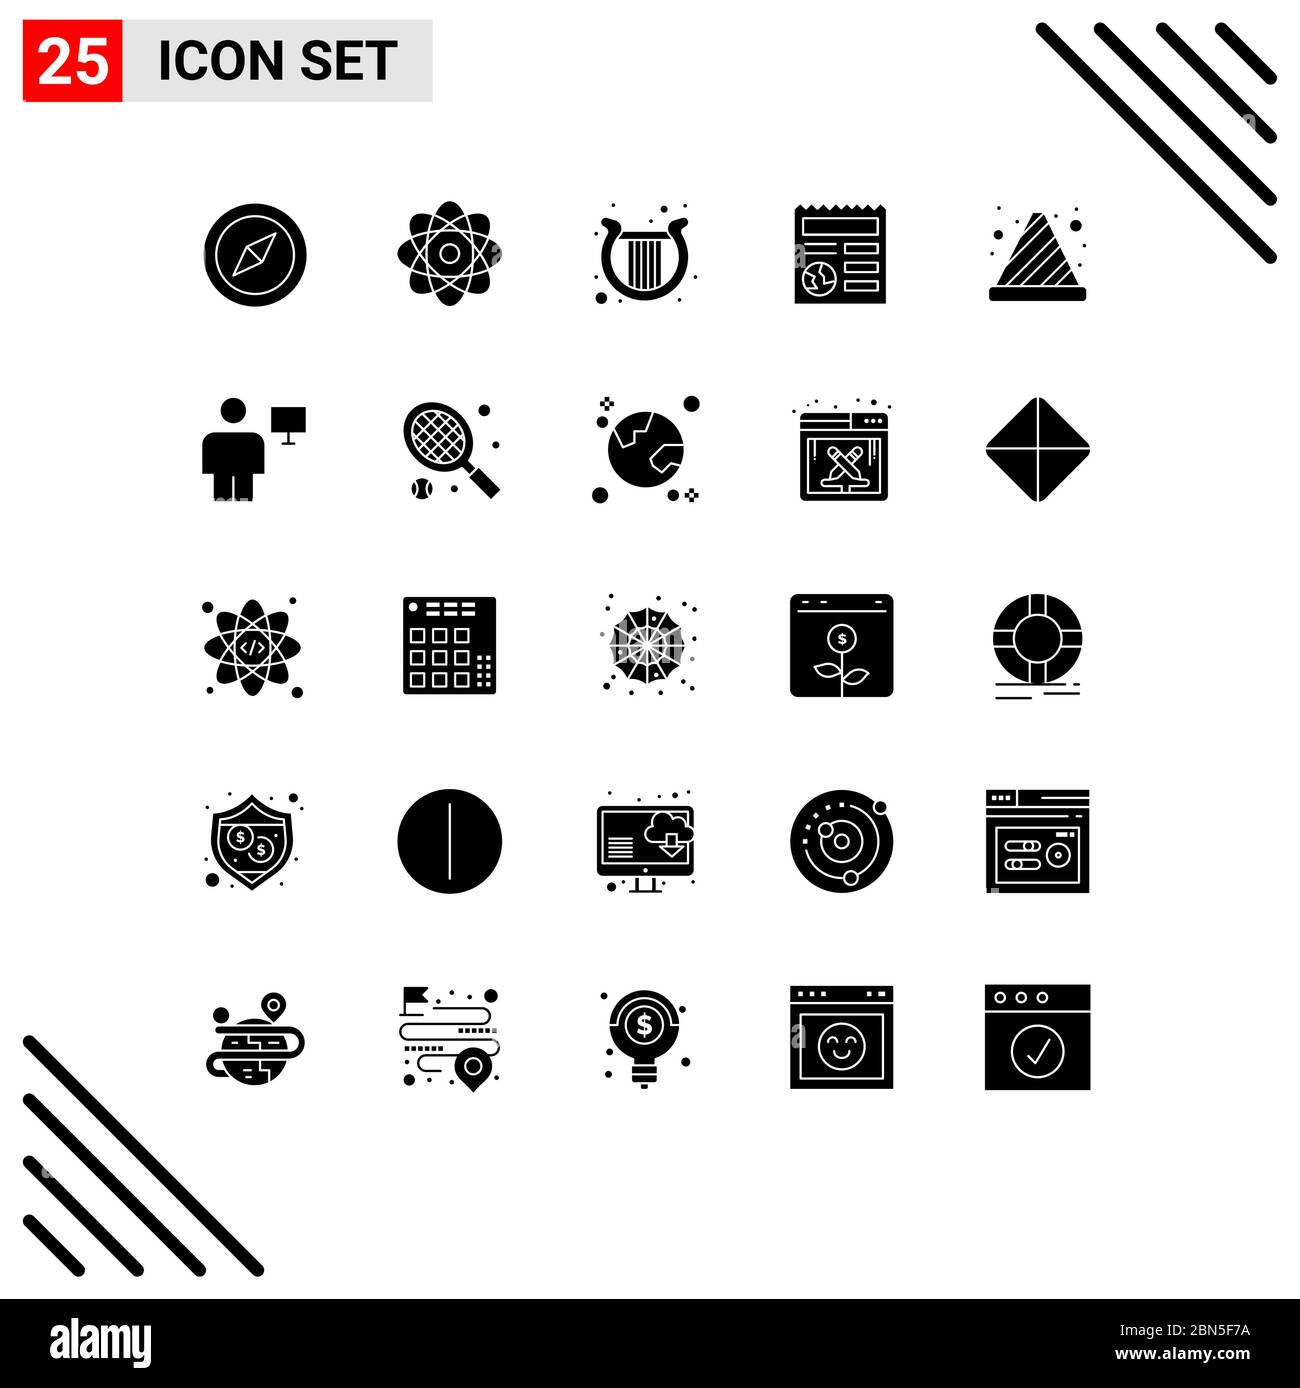 Conjunto De 25 Iconos Modernos De La Interfaz De Usuario Símbolos Señales Para El Cono De